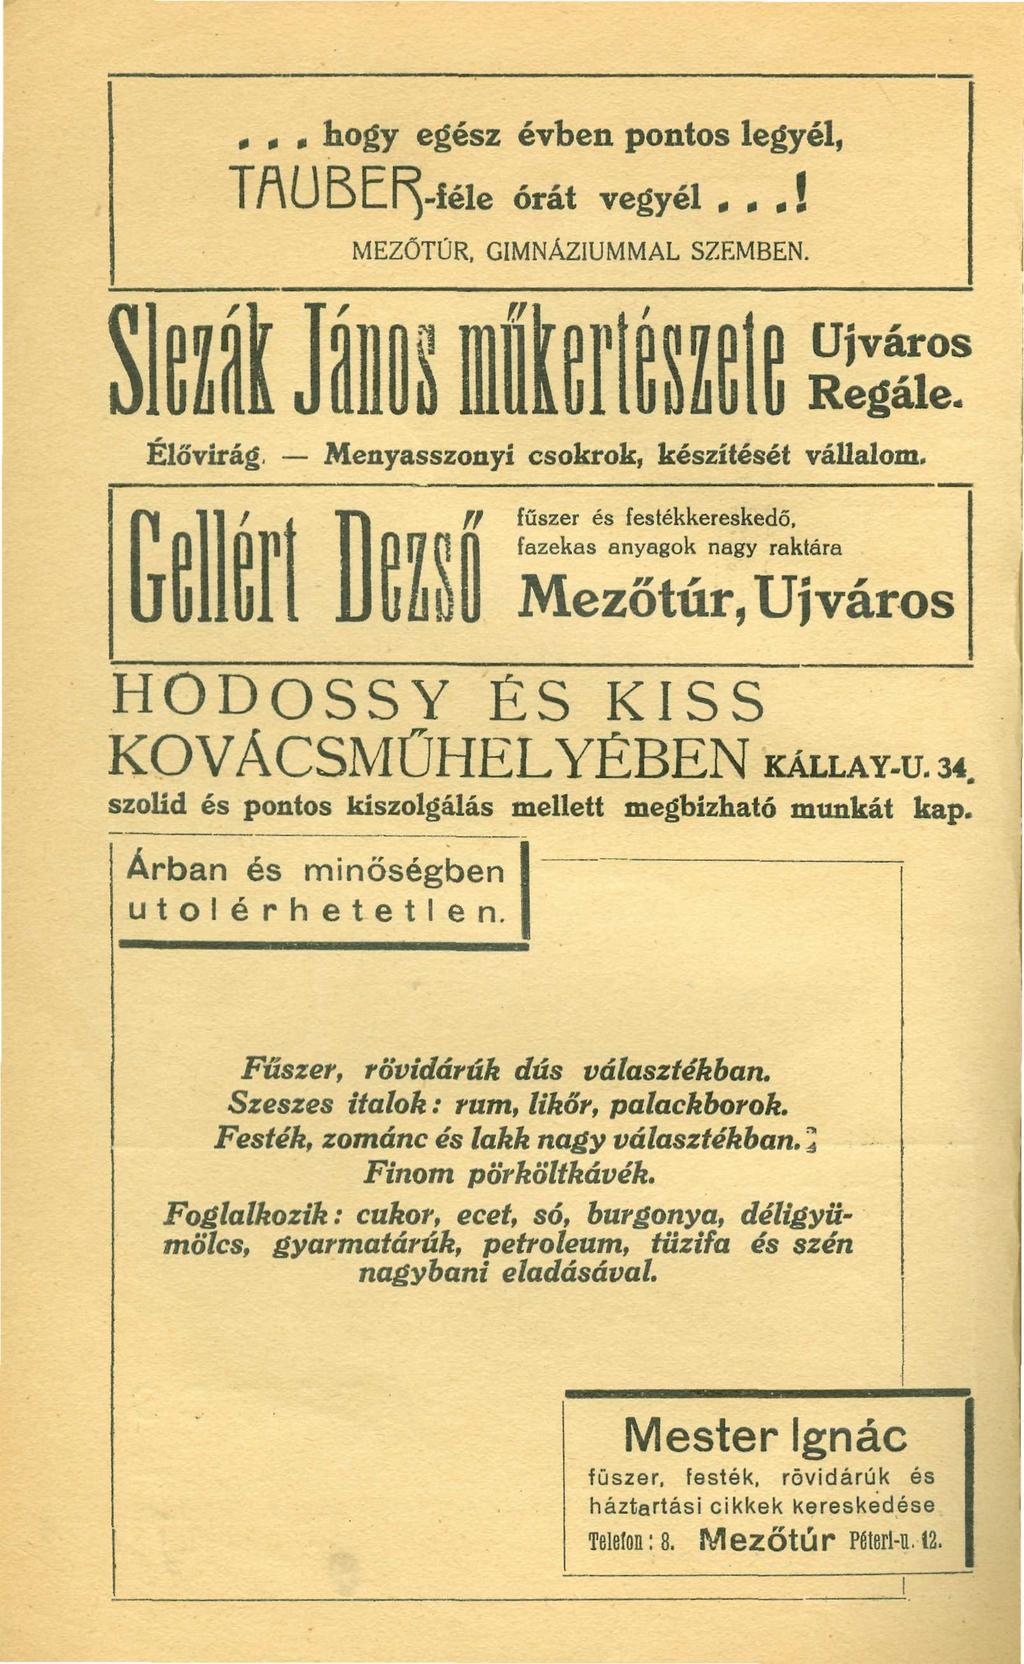 NAPTAR TÚRI 1937, LEIM KÁRPITOS - PDF Free Download